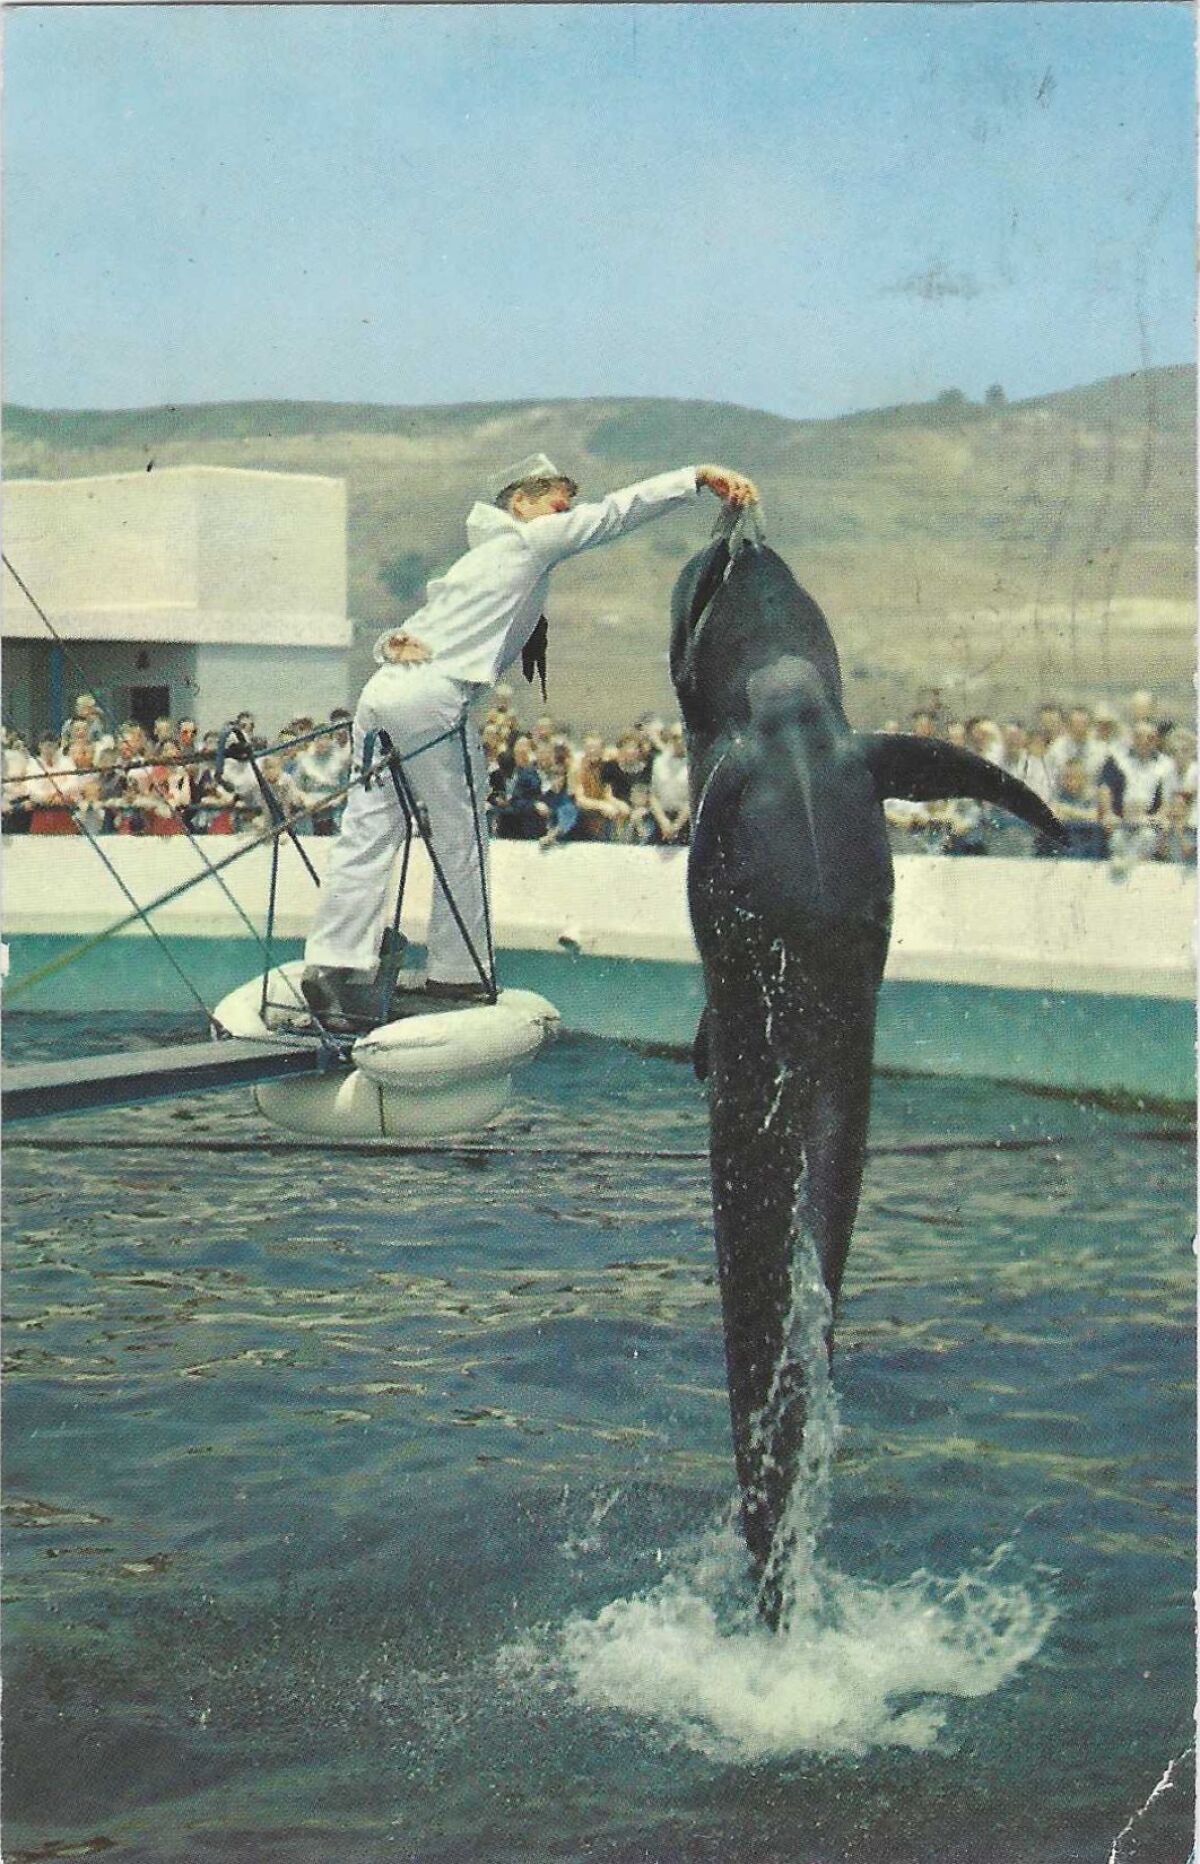 Ein Mann im Matrosenkostüm hält einem Wal, der aus einem Panzer springt, Futter hin